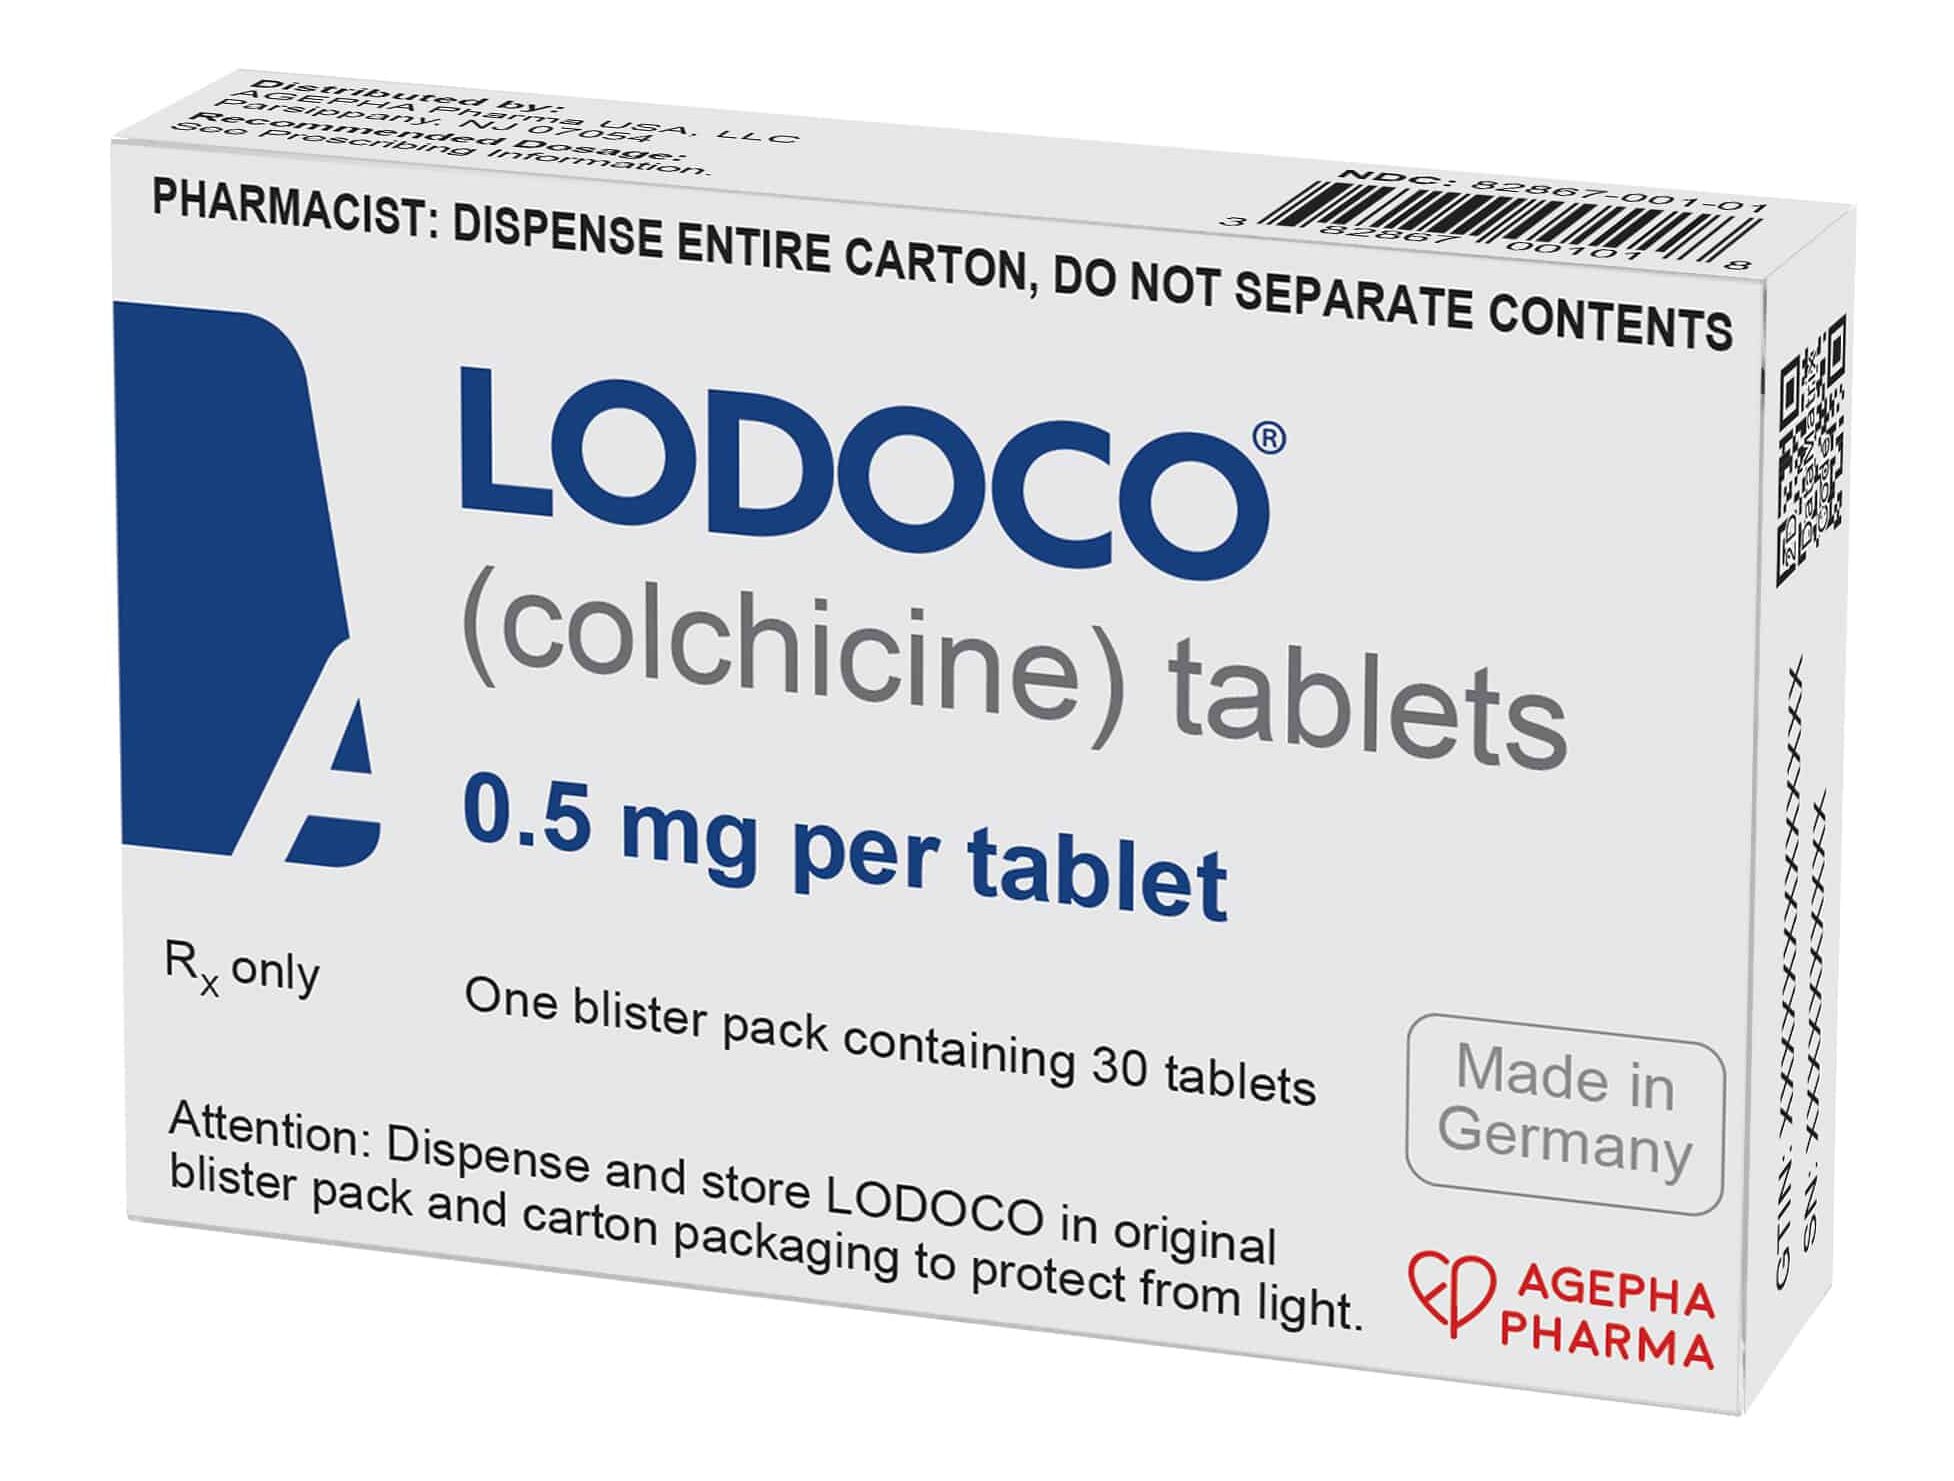 Agepha Pharma box Lodoco